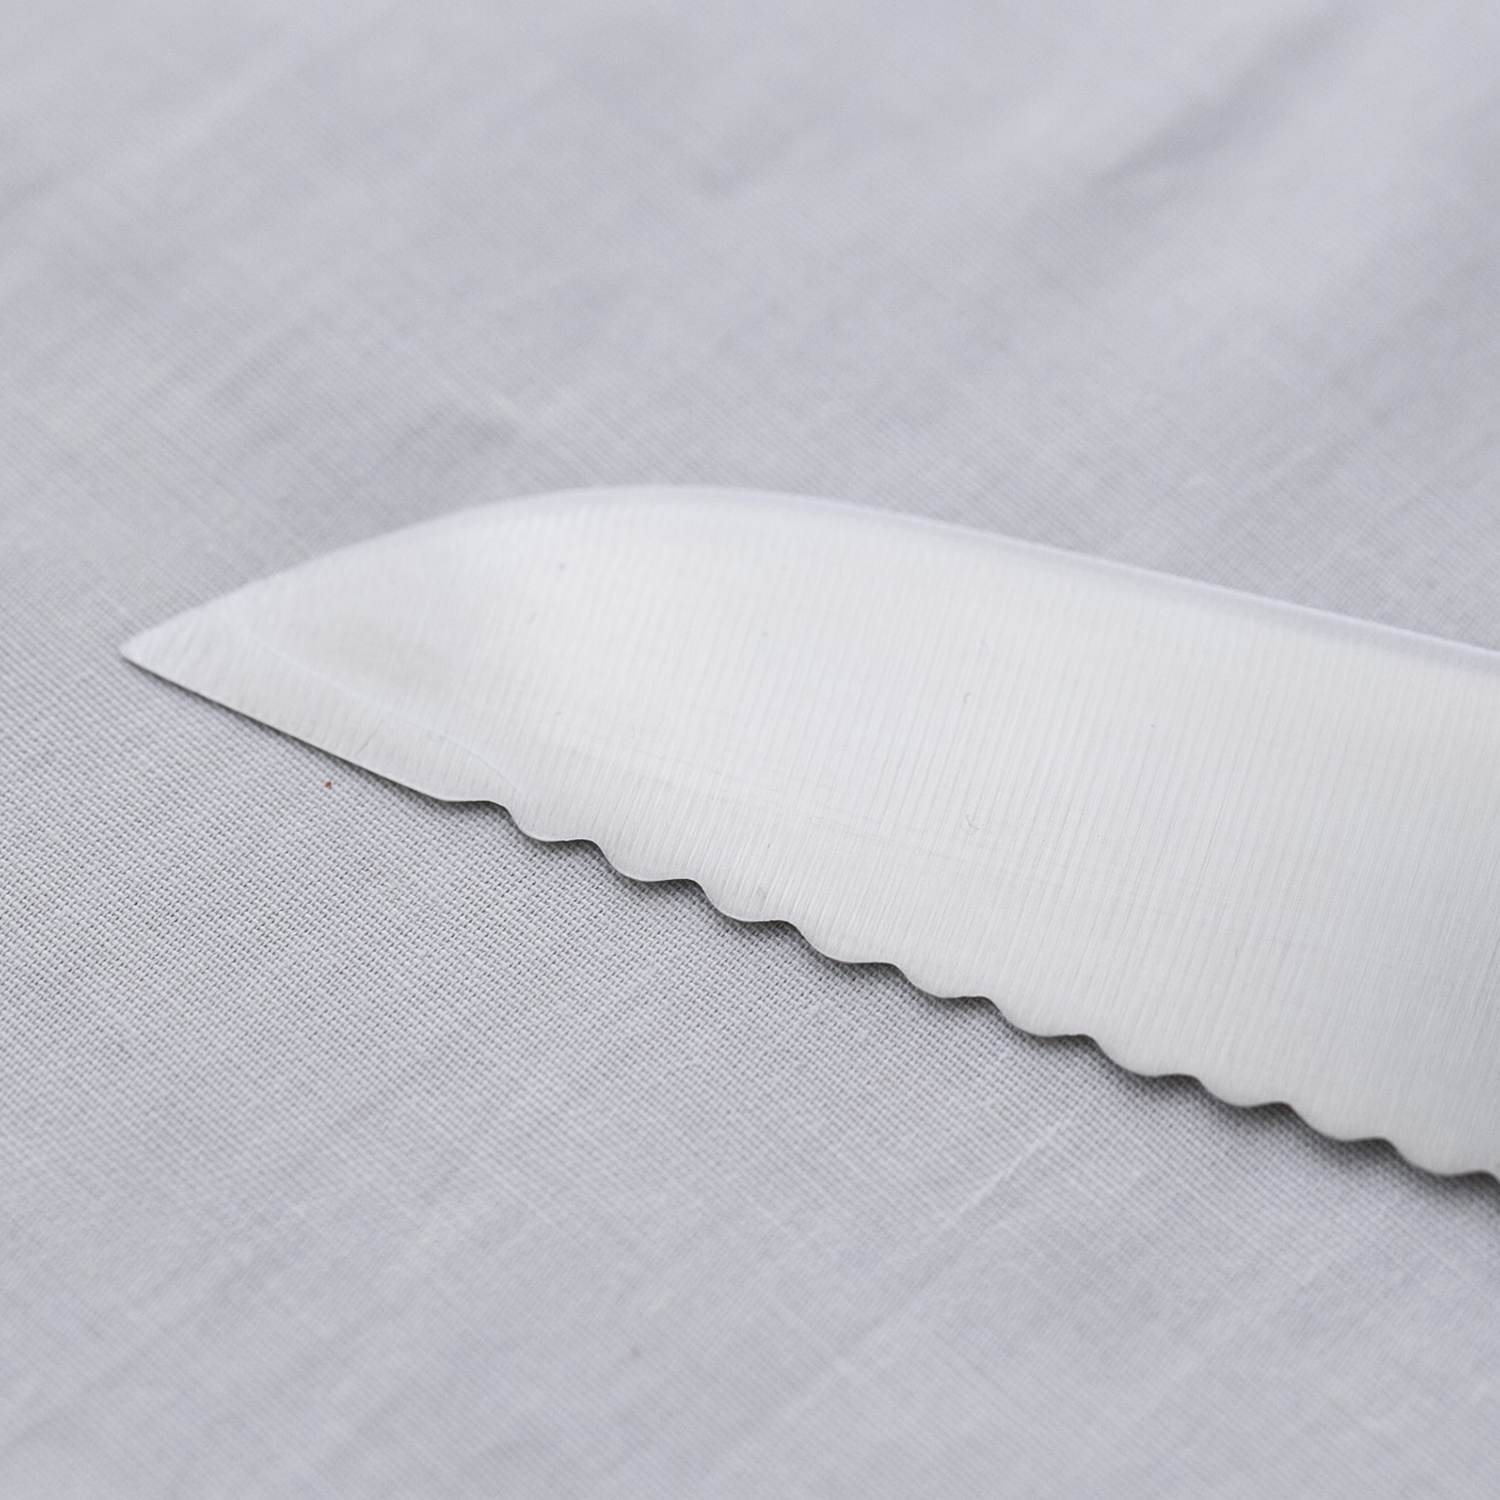 和 NAGOMI/パン切りナイフ